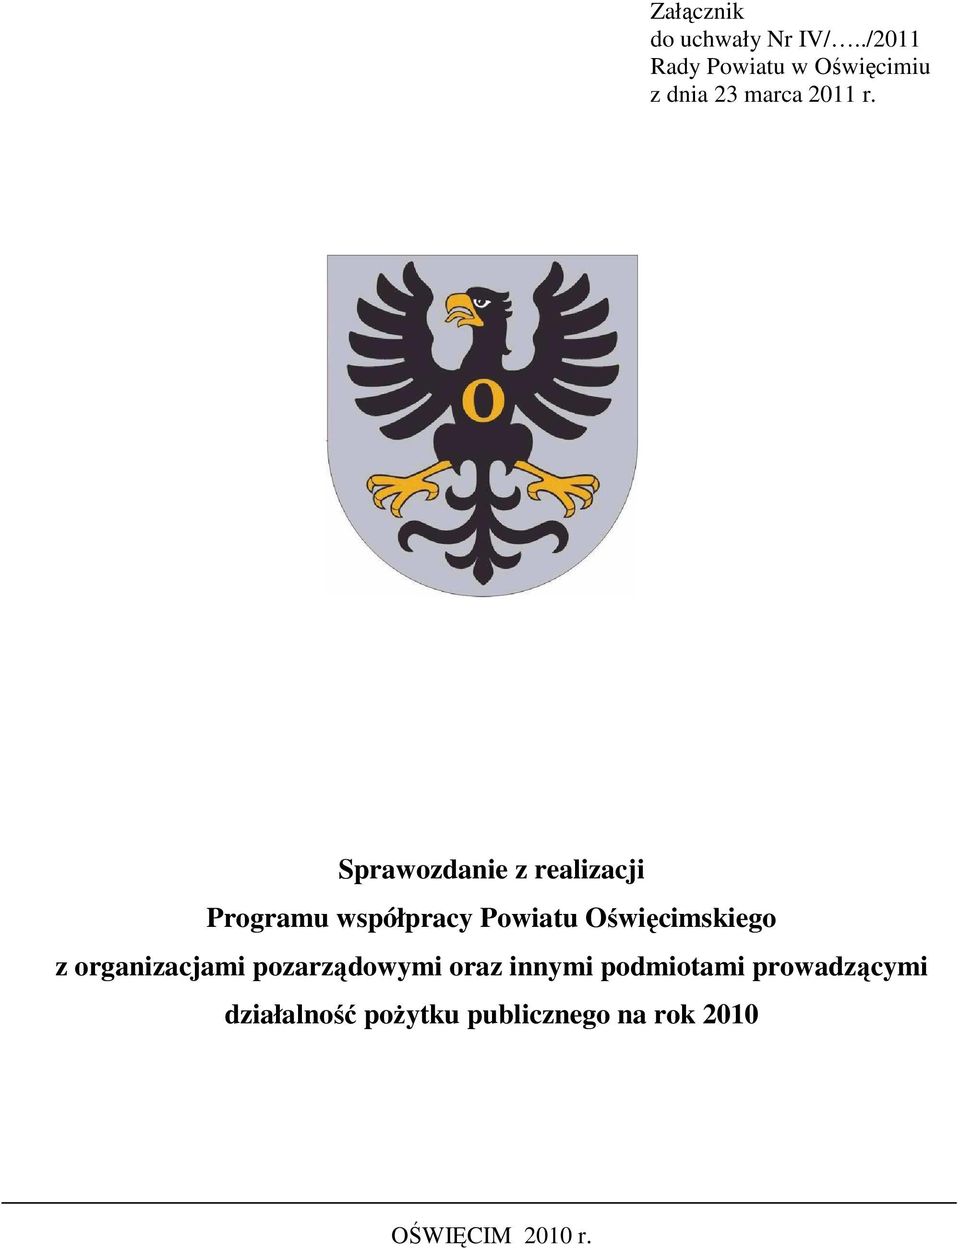 Sprawozdanie z realizacji Programu współpracy Powiatu Oświęcimskiego